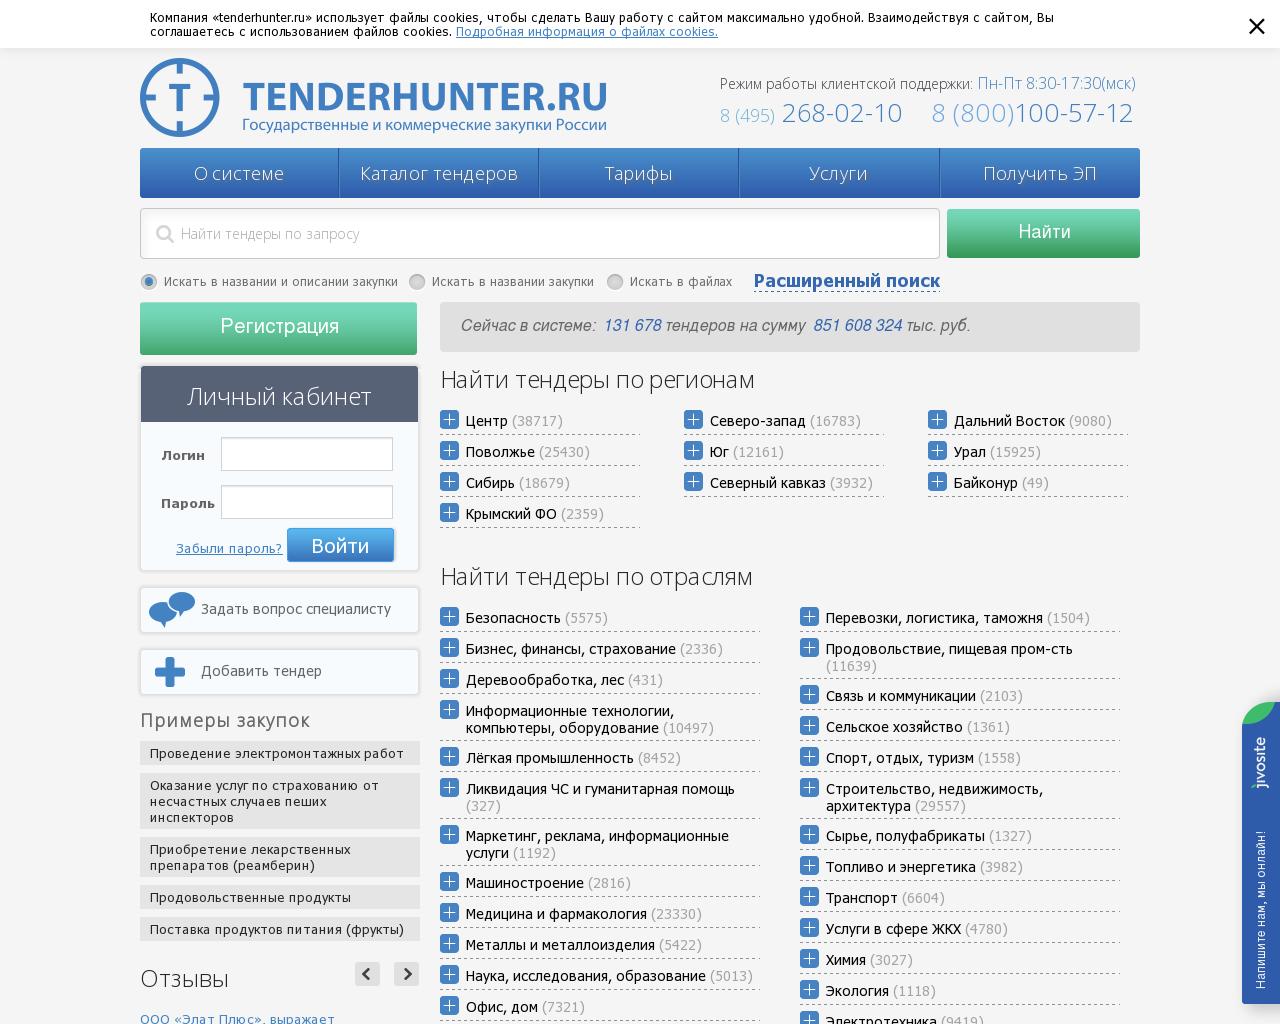 Изображение сайта tenderhunter.ru в разрешении 1280x1024